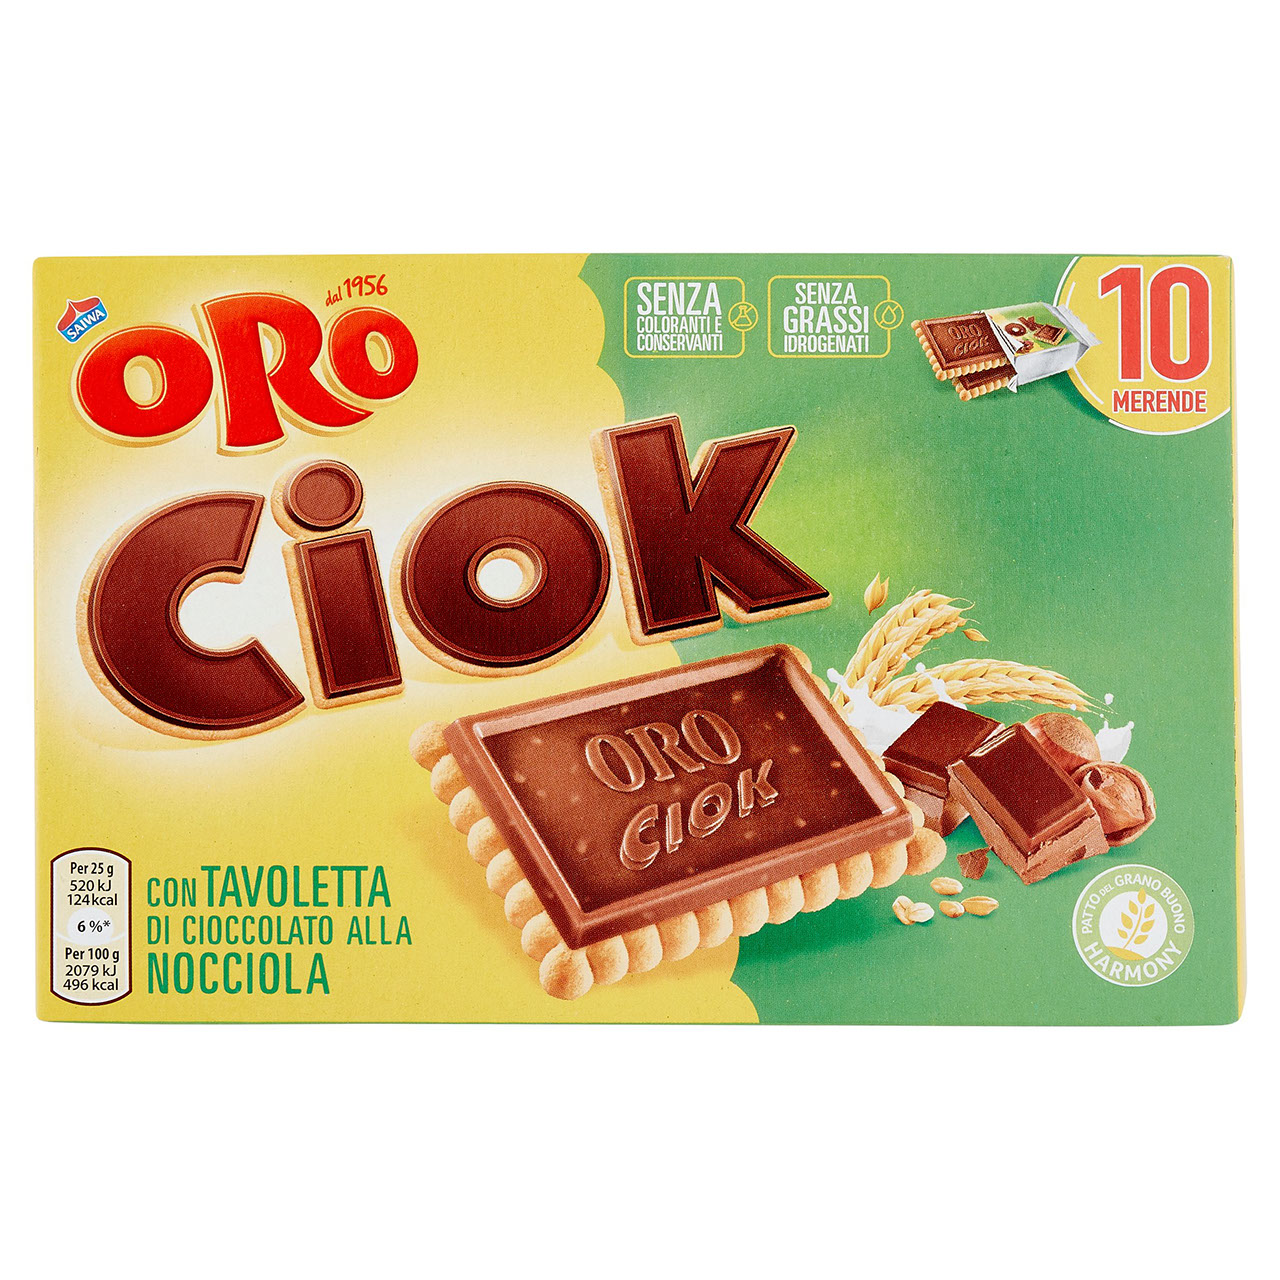 Oro Ciok con Cioccolato alla Nocciola 10 x 25 g